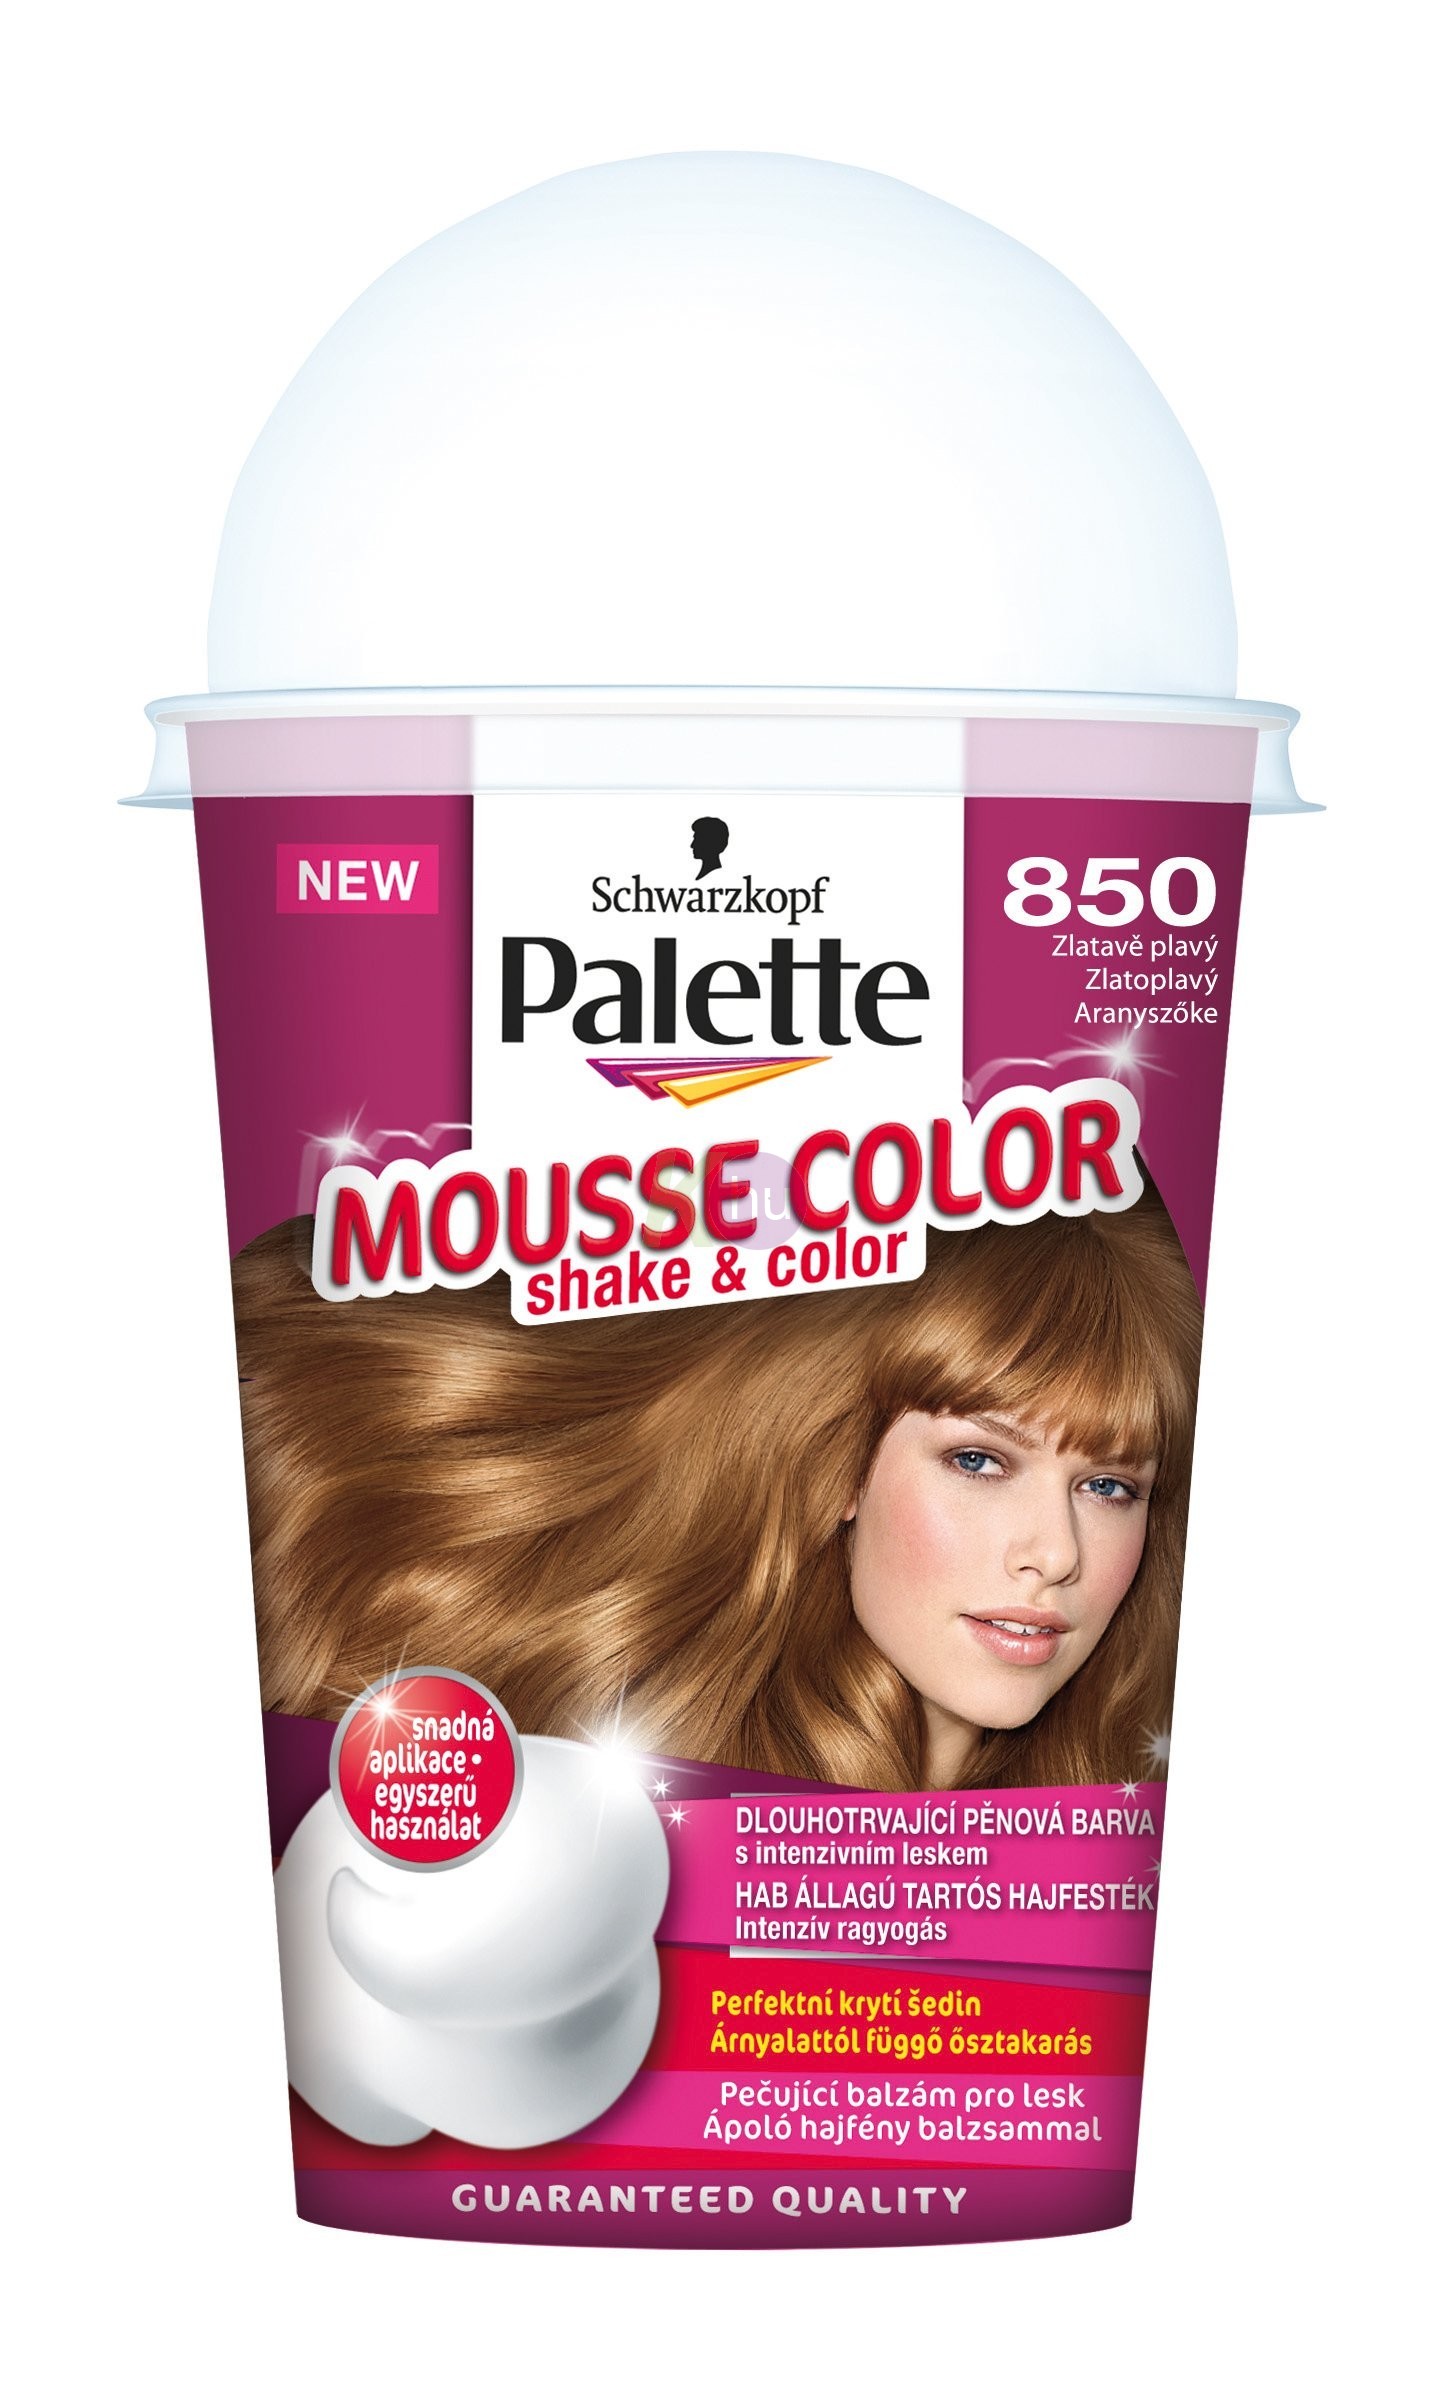 Palette Mousse Color 850 aranyszőke 13100867